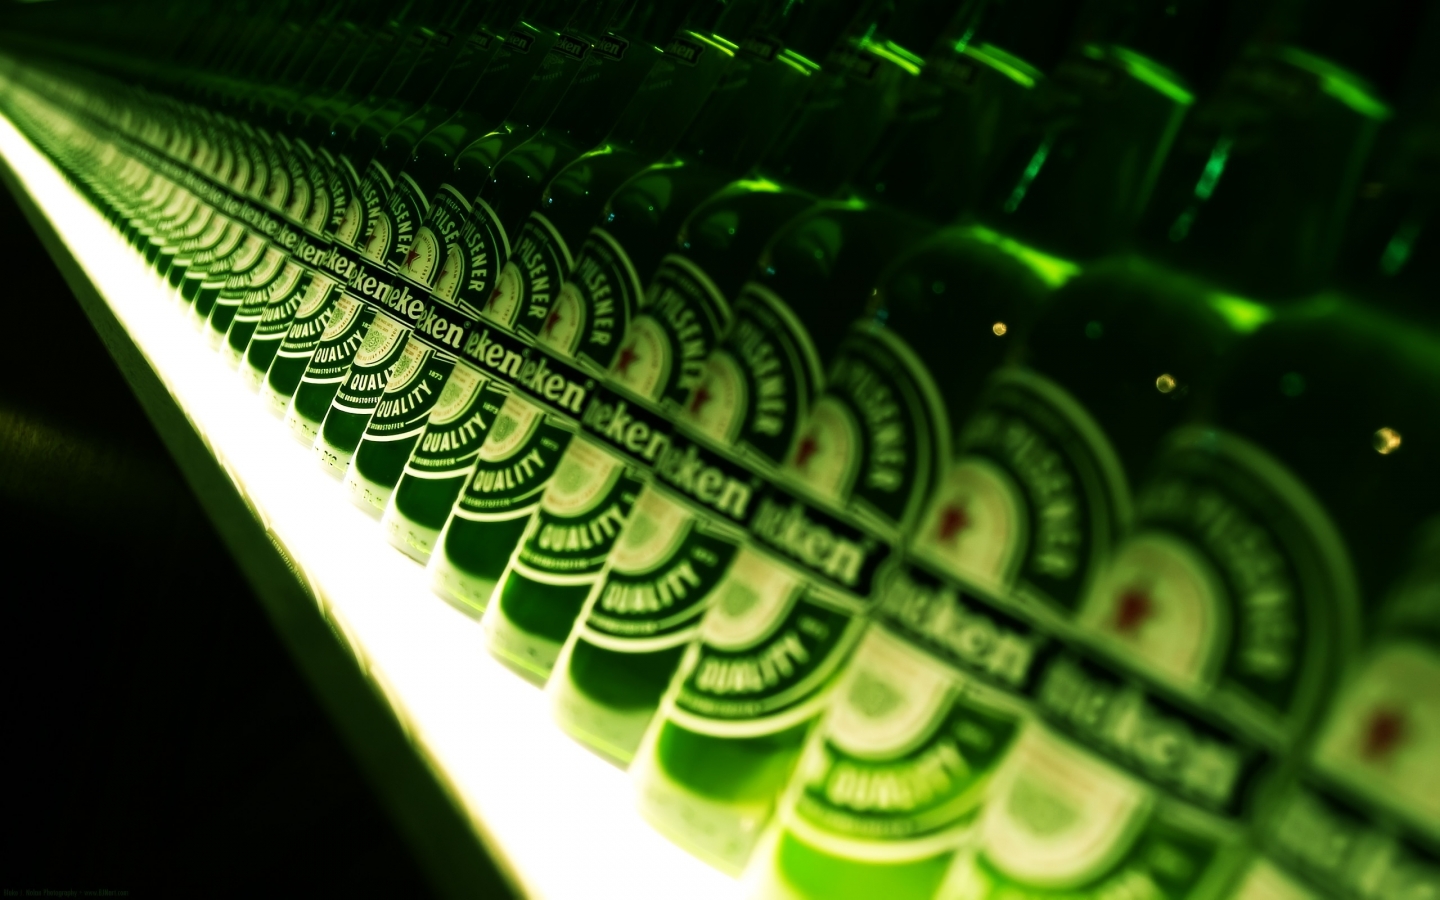 Heineken Anyone for 1440 x 900 widescreen resolution